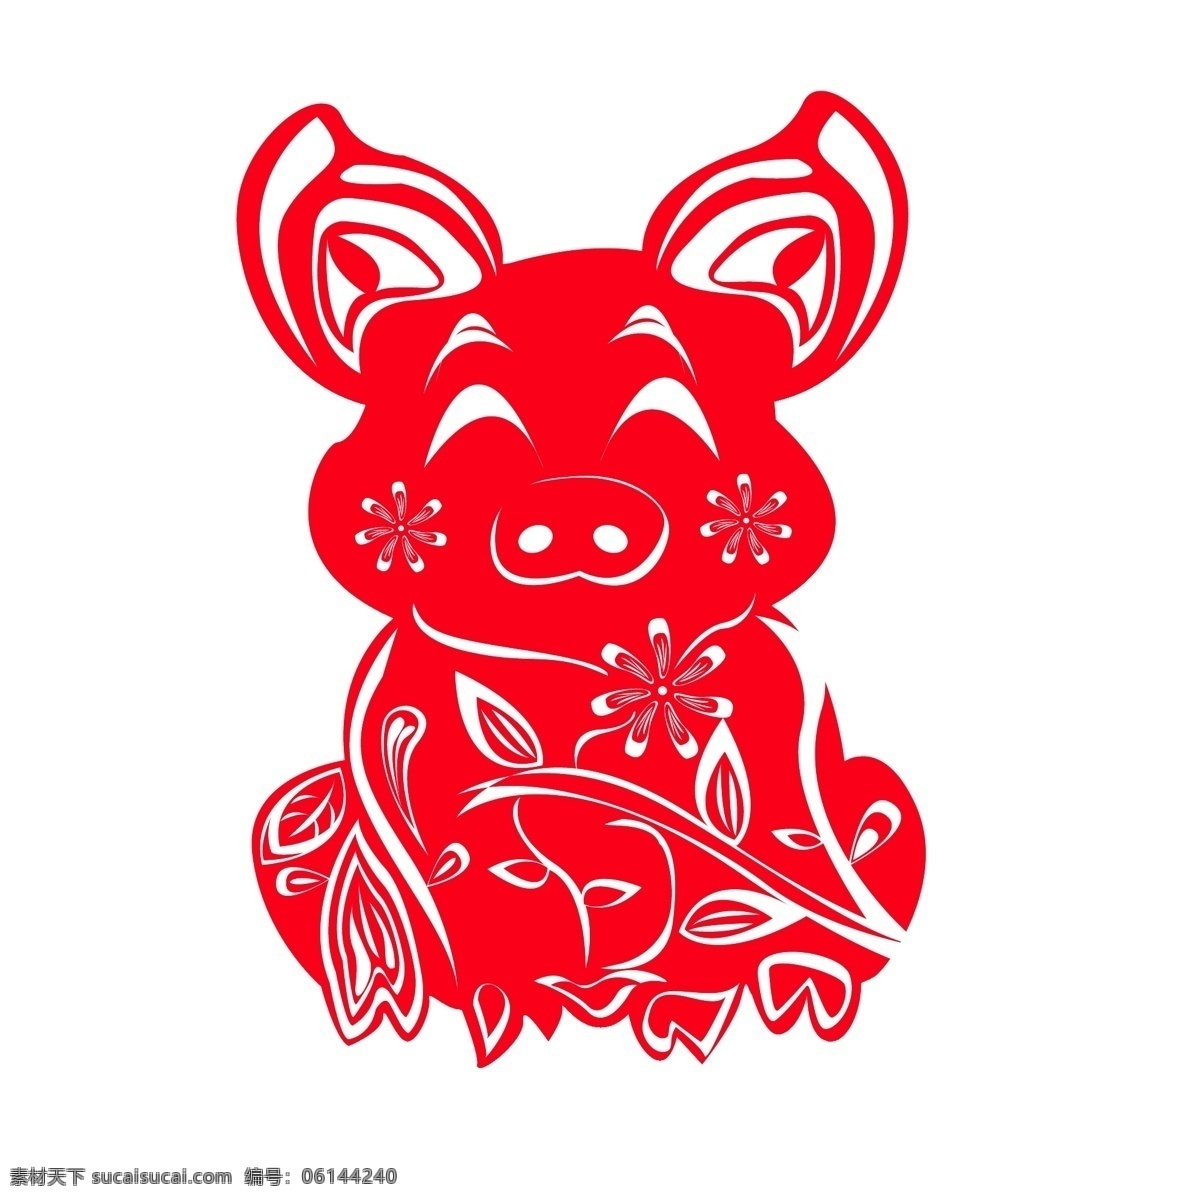 中国 风 喜庆 创意 猪 窗花 剪纸 商用 元素 可爱 婚礼 动物 新年 春节 猪年 安康 吉祥 中国红 中国风 手艺